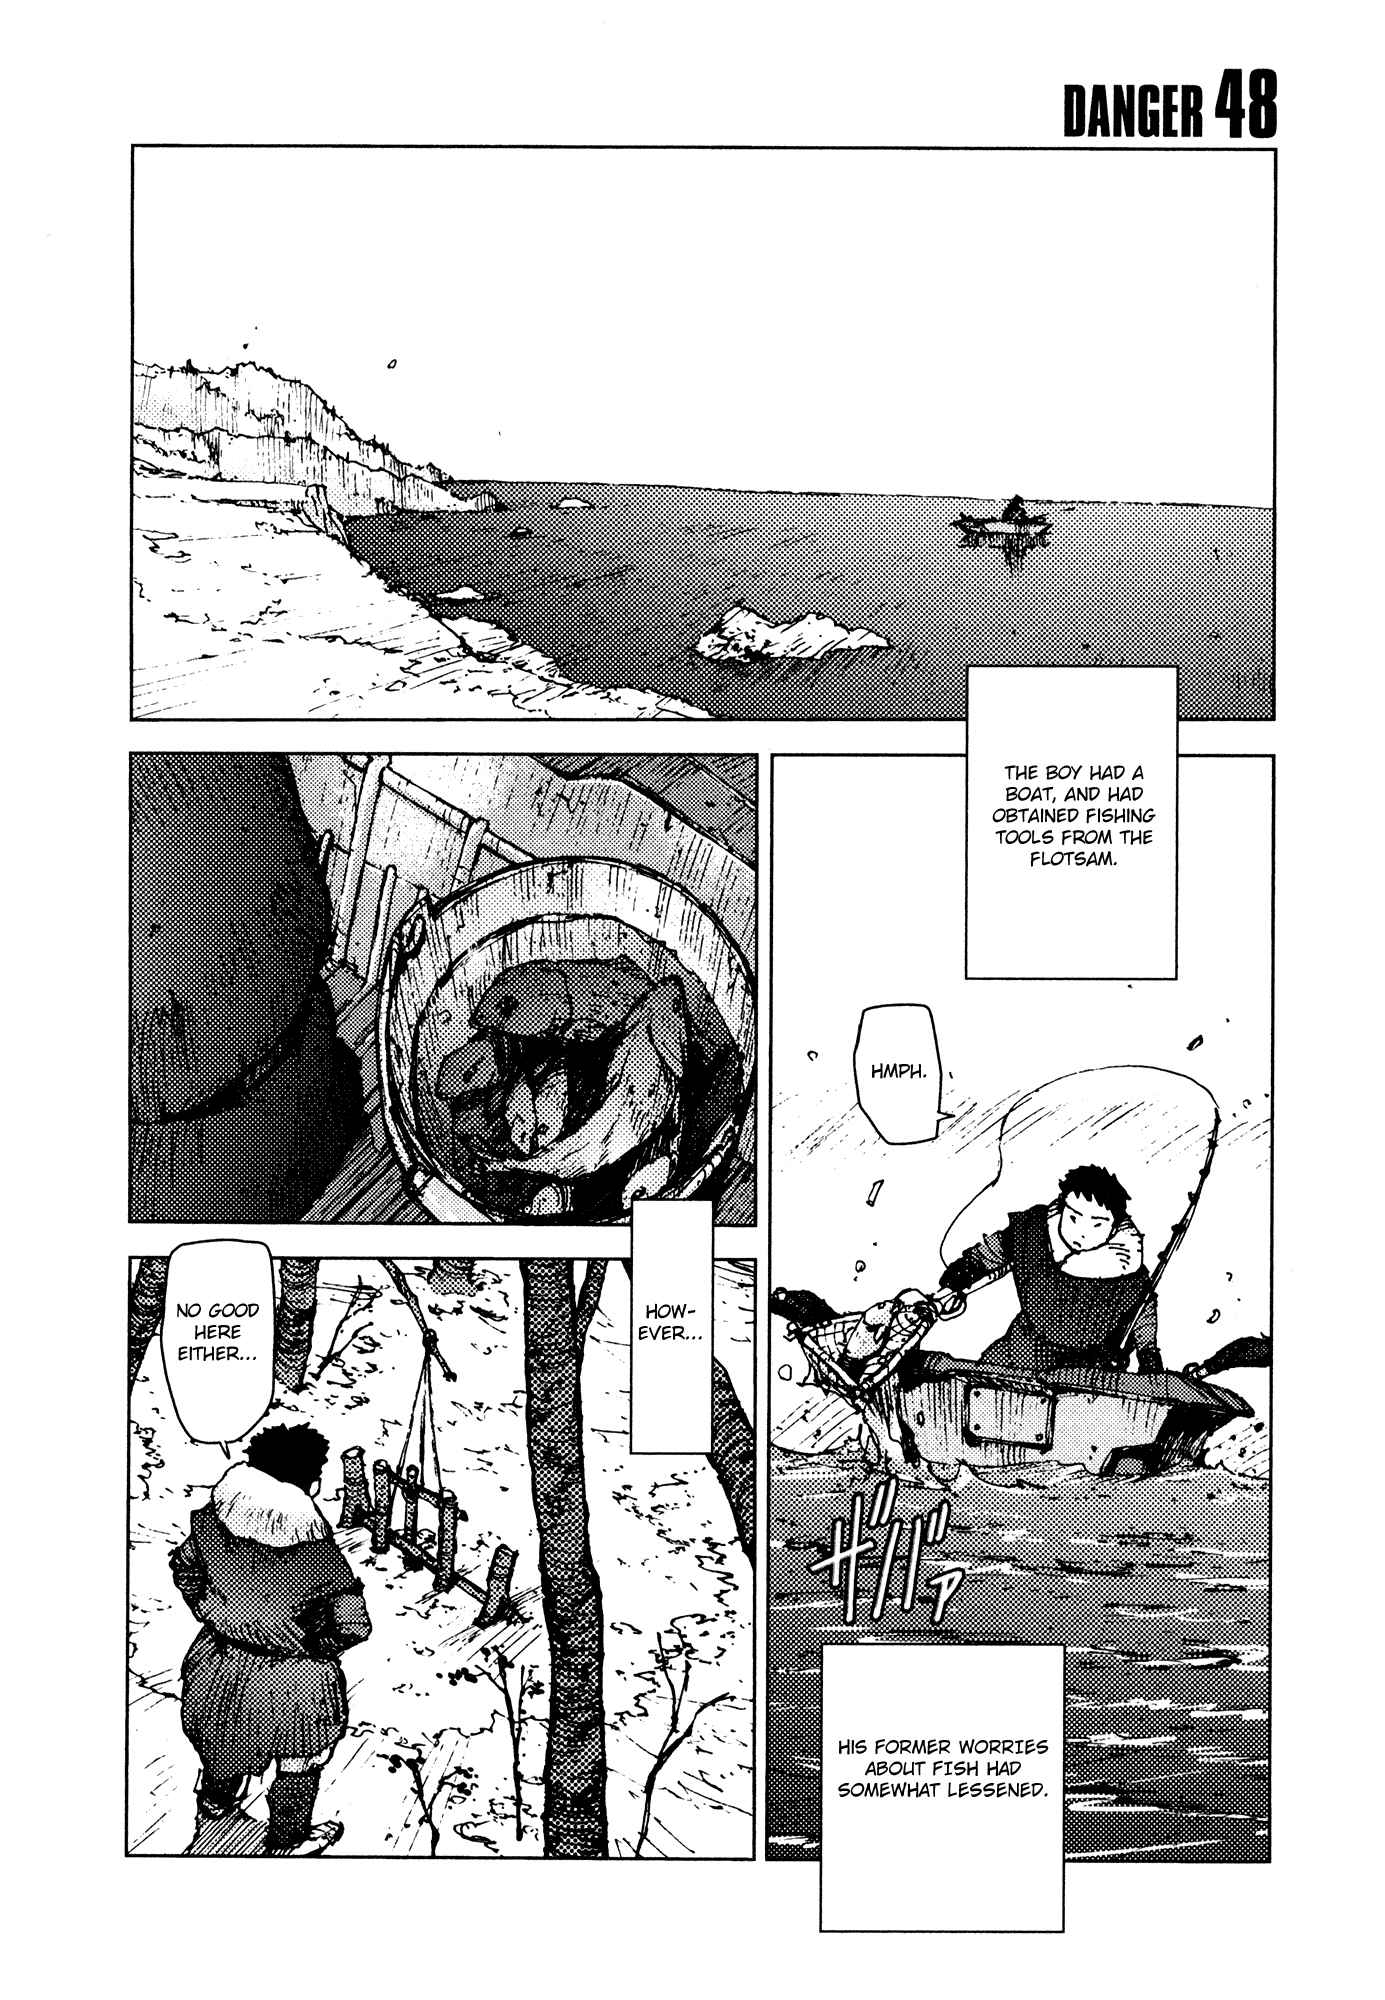 Survival: Shounen S no Kiroku Vol.3 Ch.48